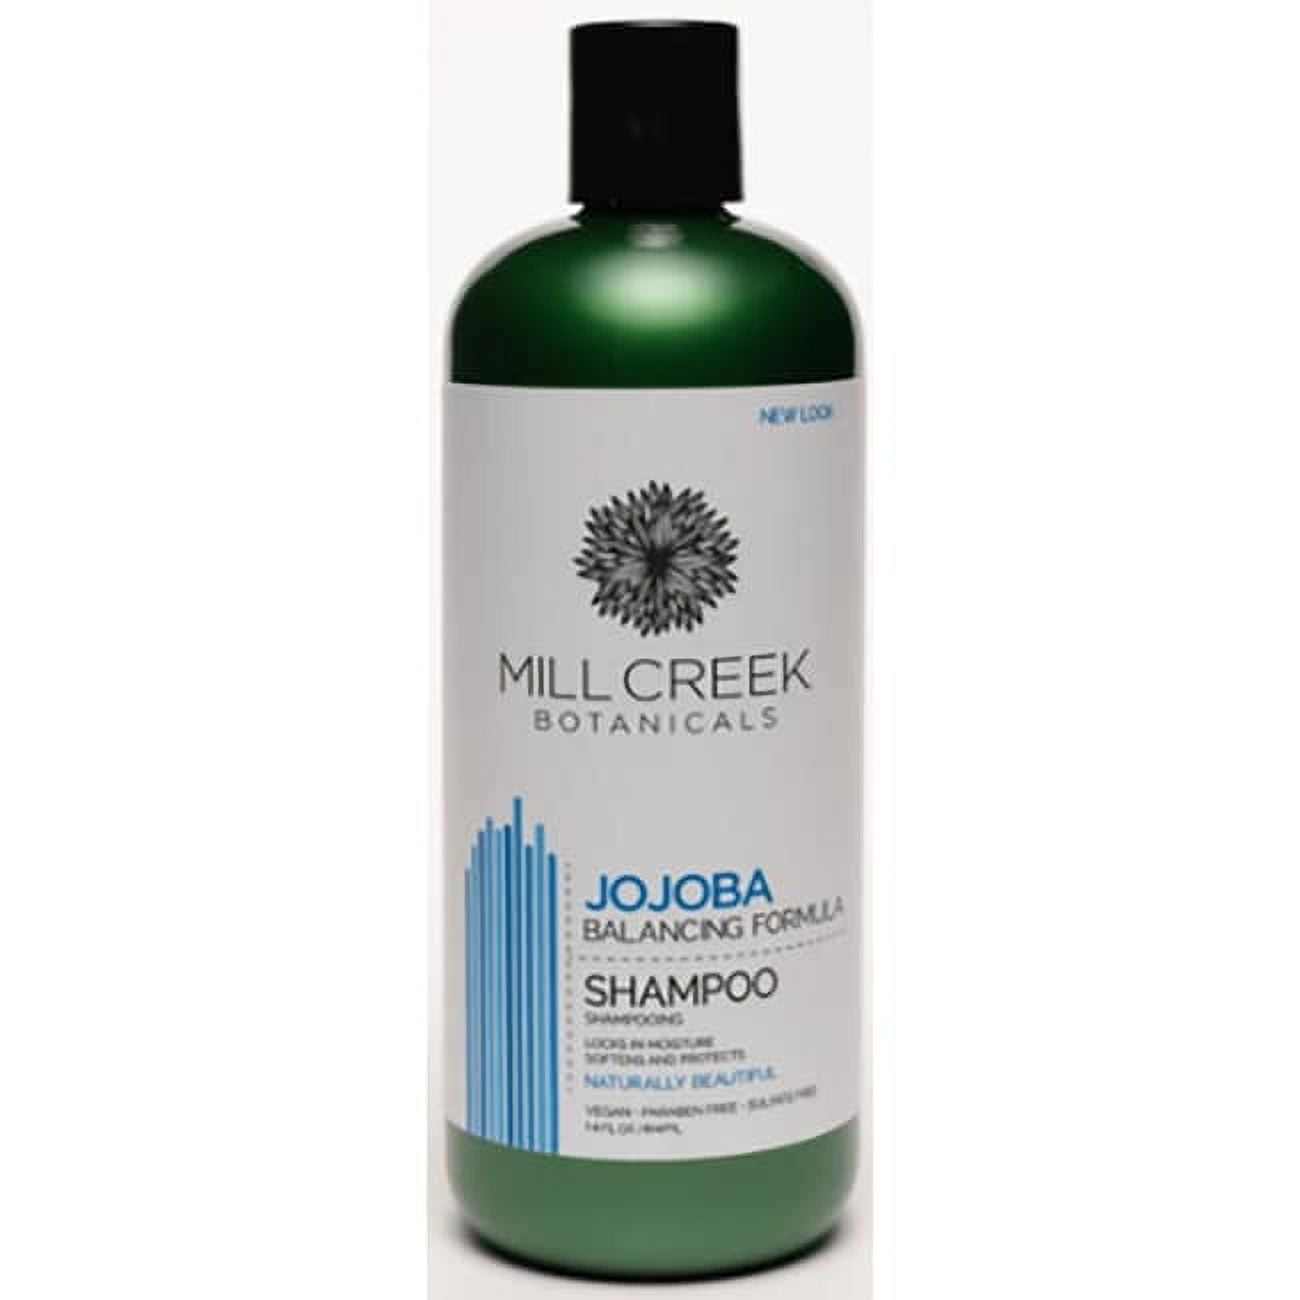 Design Essentials Almond & Avocado Moisturizing & Detangling Sulfate-Free  Shampoo - 12oz